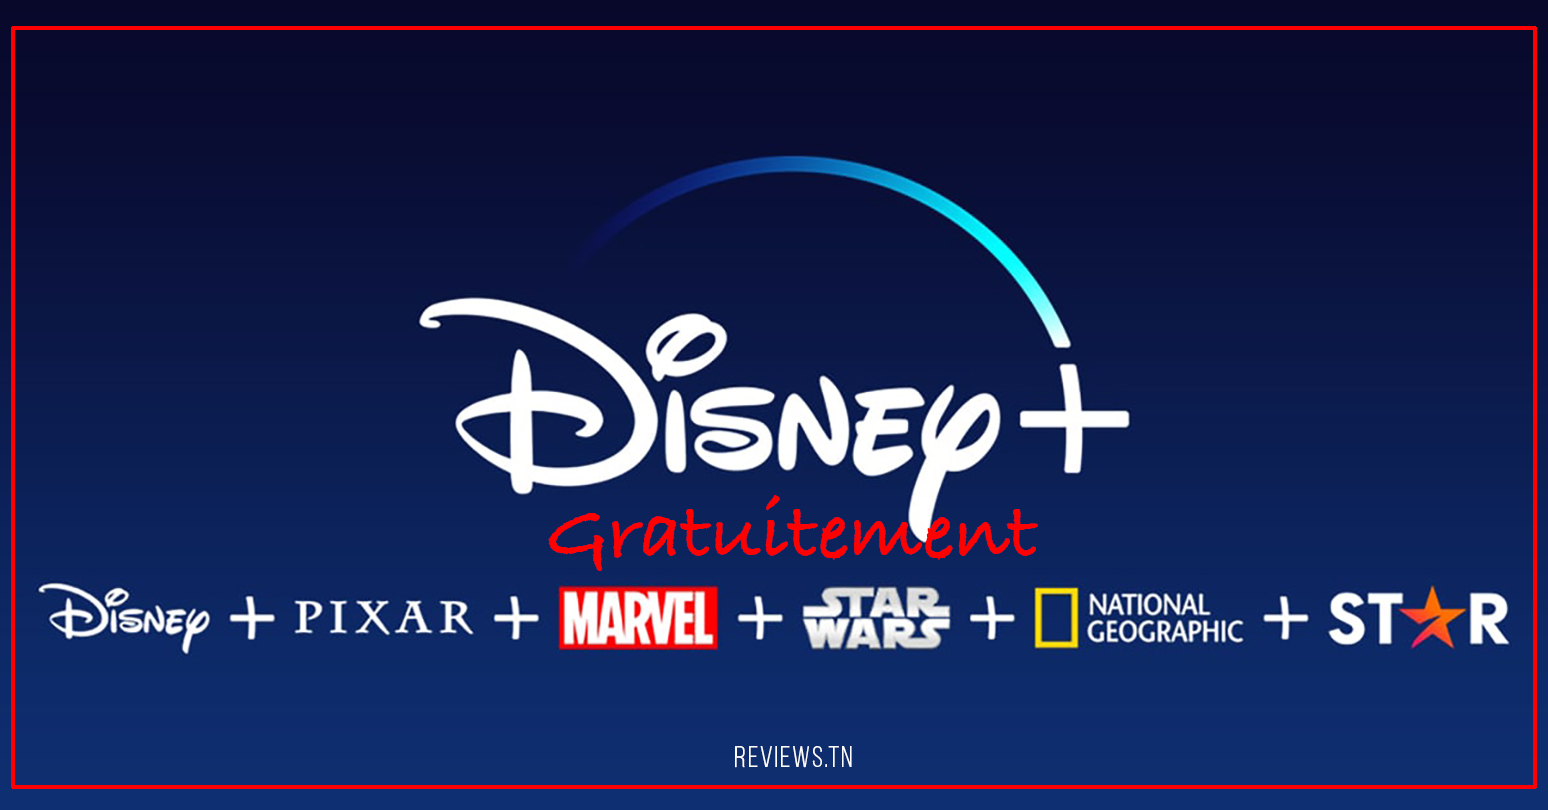 Потоковое вещание: как получить бесплатную пробную версию Disney Plus в 2022 году? (6 месяцев)